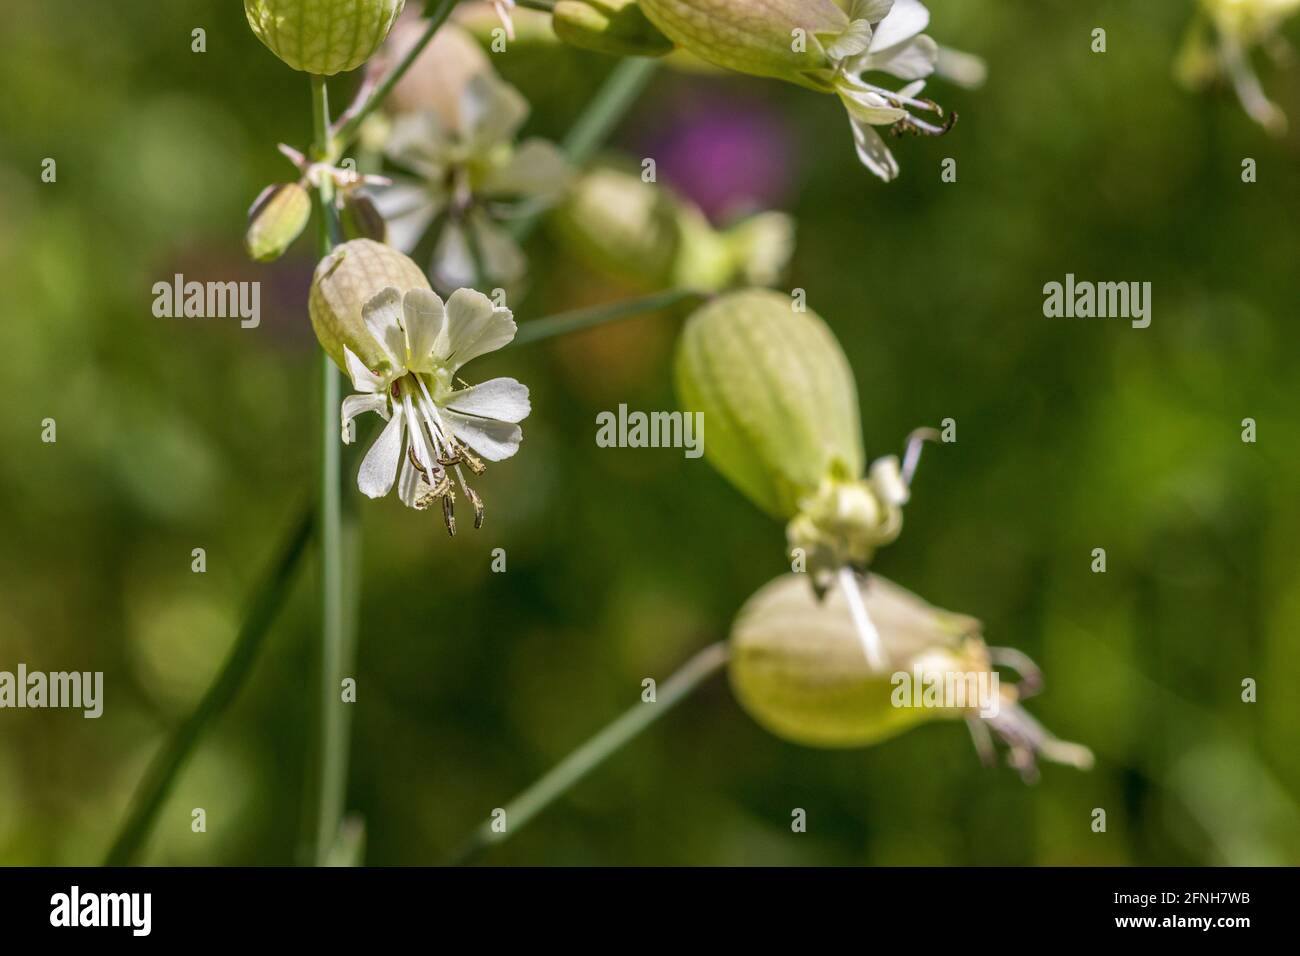 Silene vulgaris, Maiden's tears Plant in Flower Stock Photo